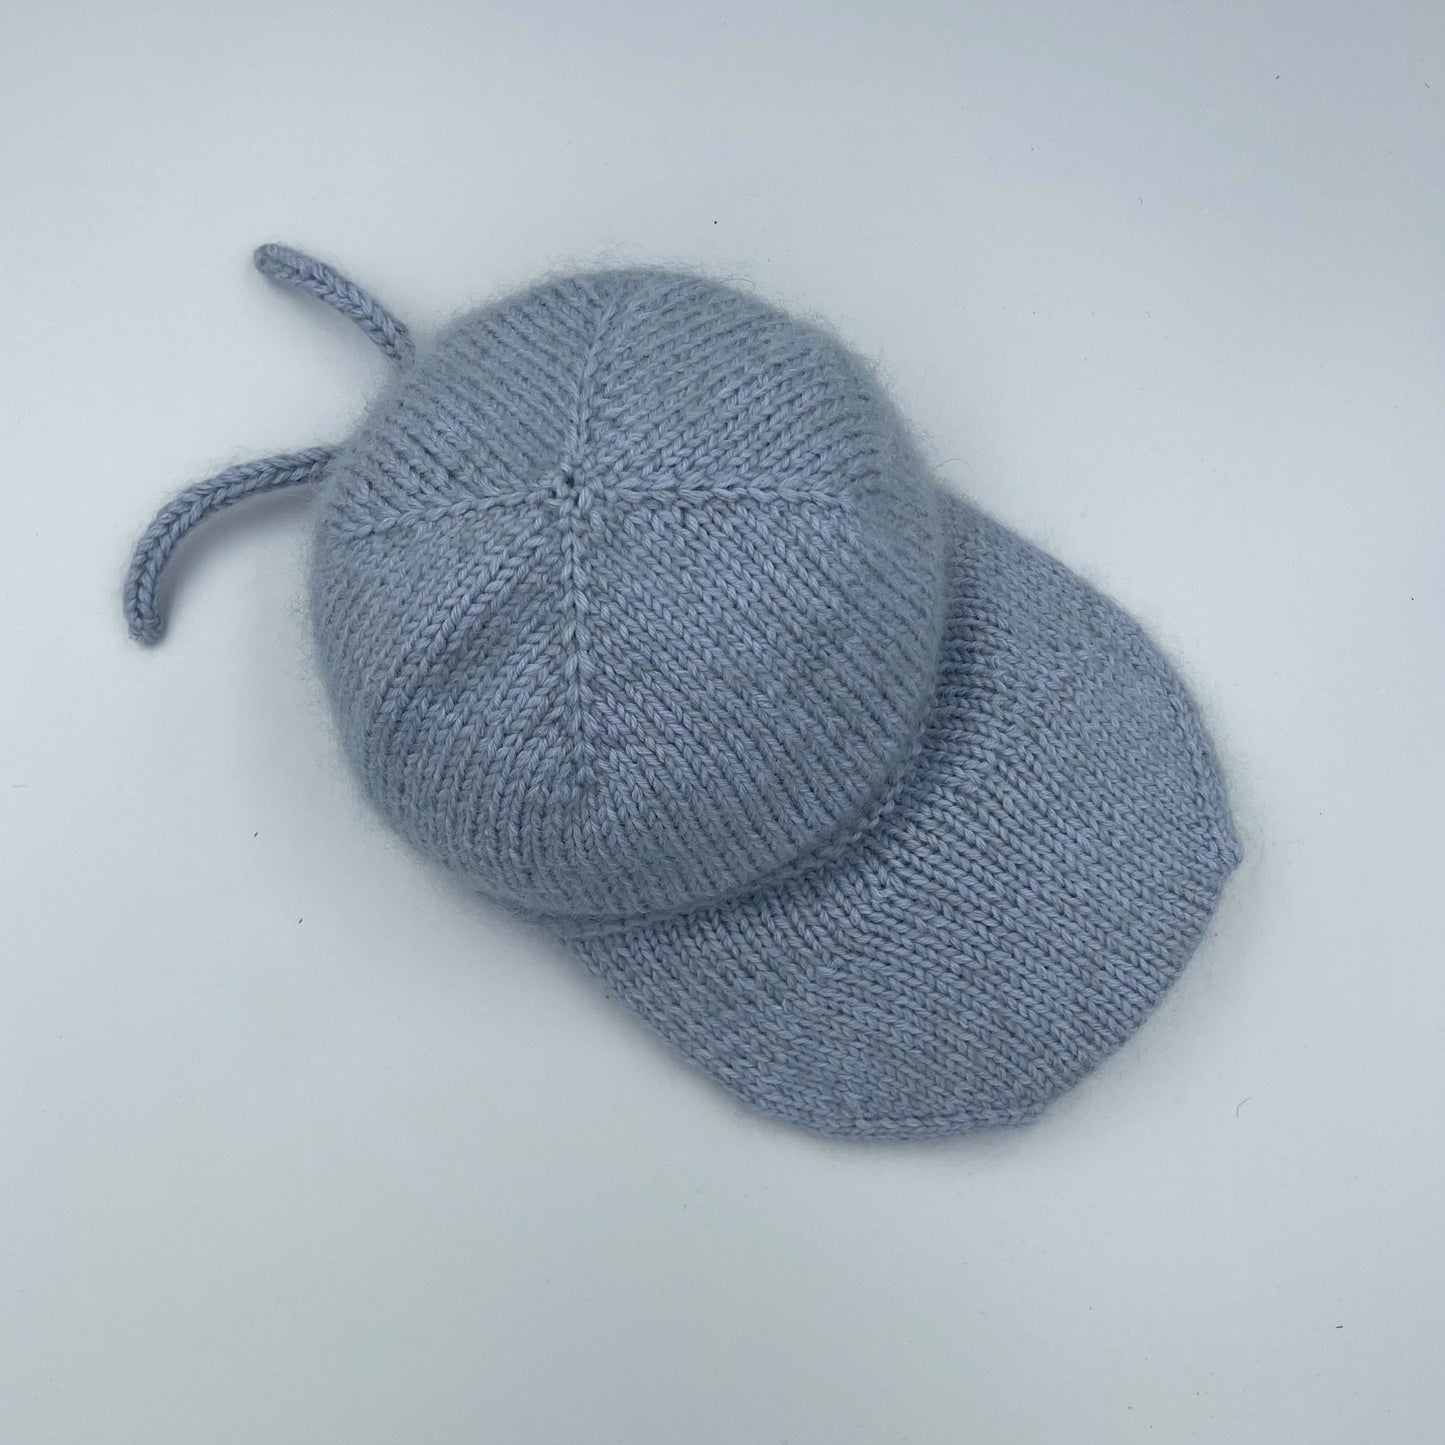 Pastel Winter Cap knitting pattern - English